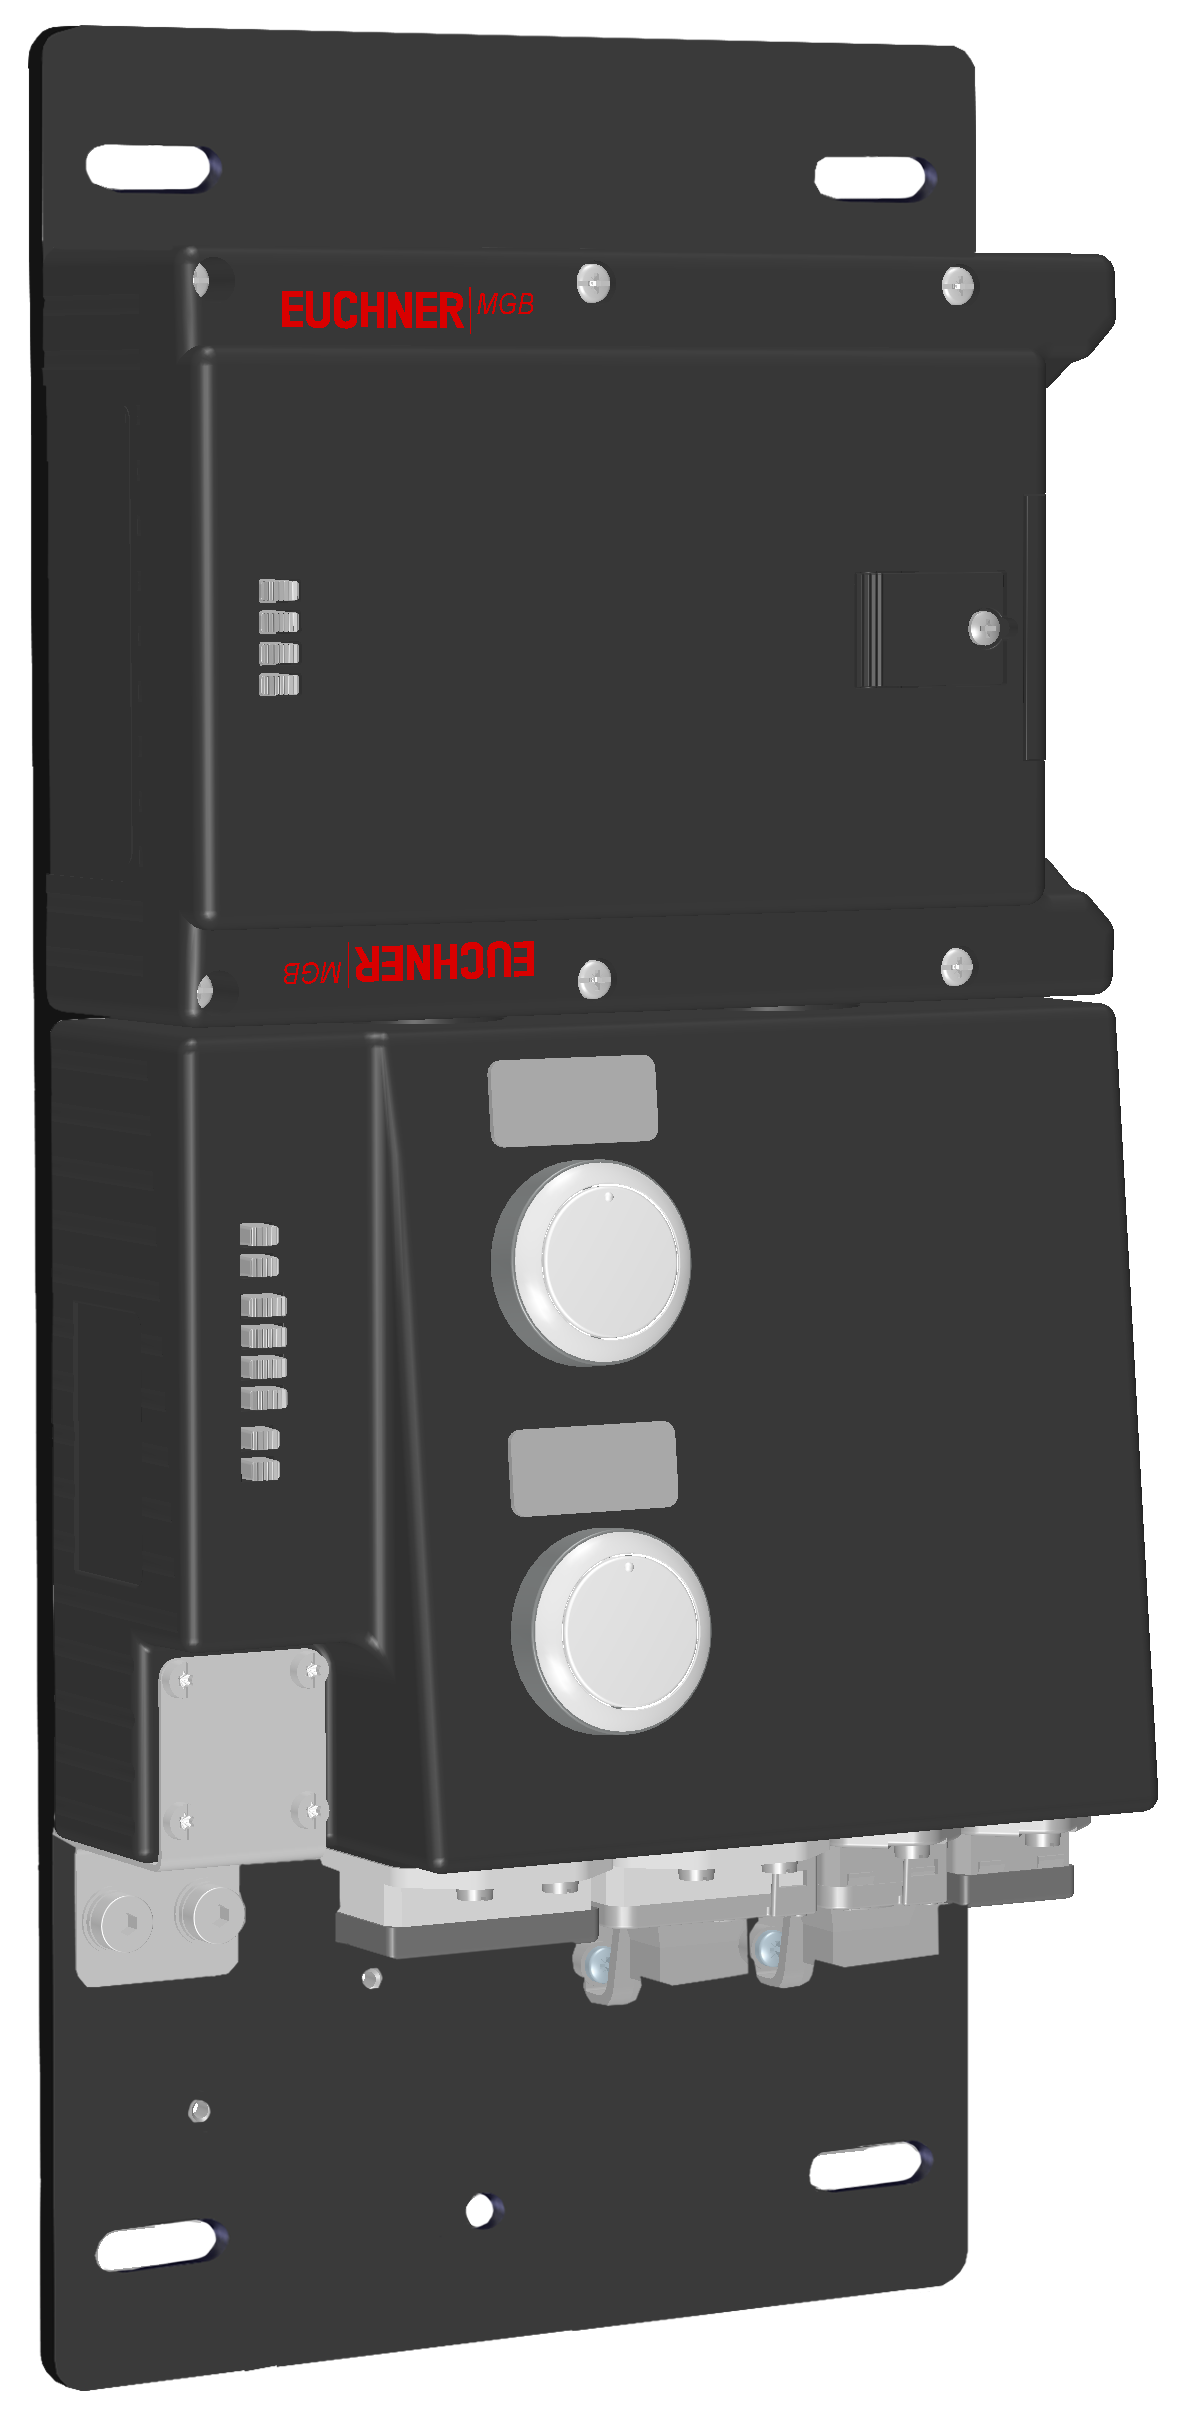 Locking modules MGB-L1B-PNA-R-121831  (Order no. 121831)